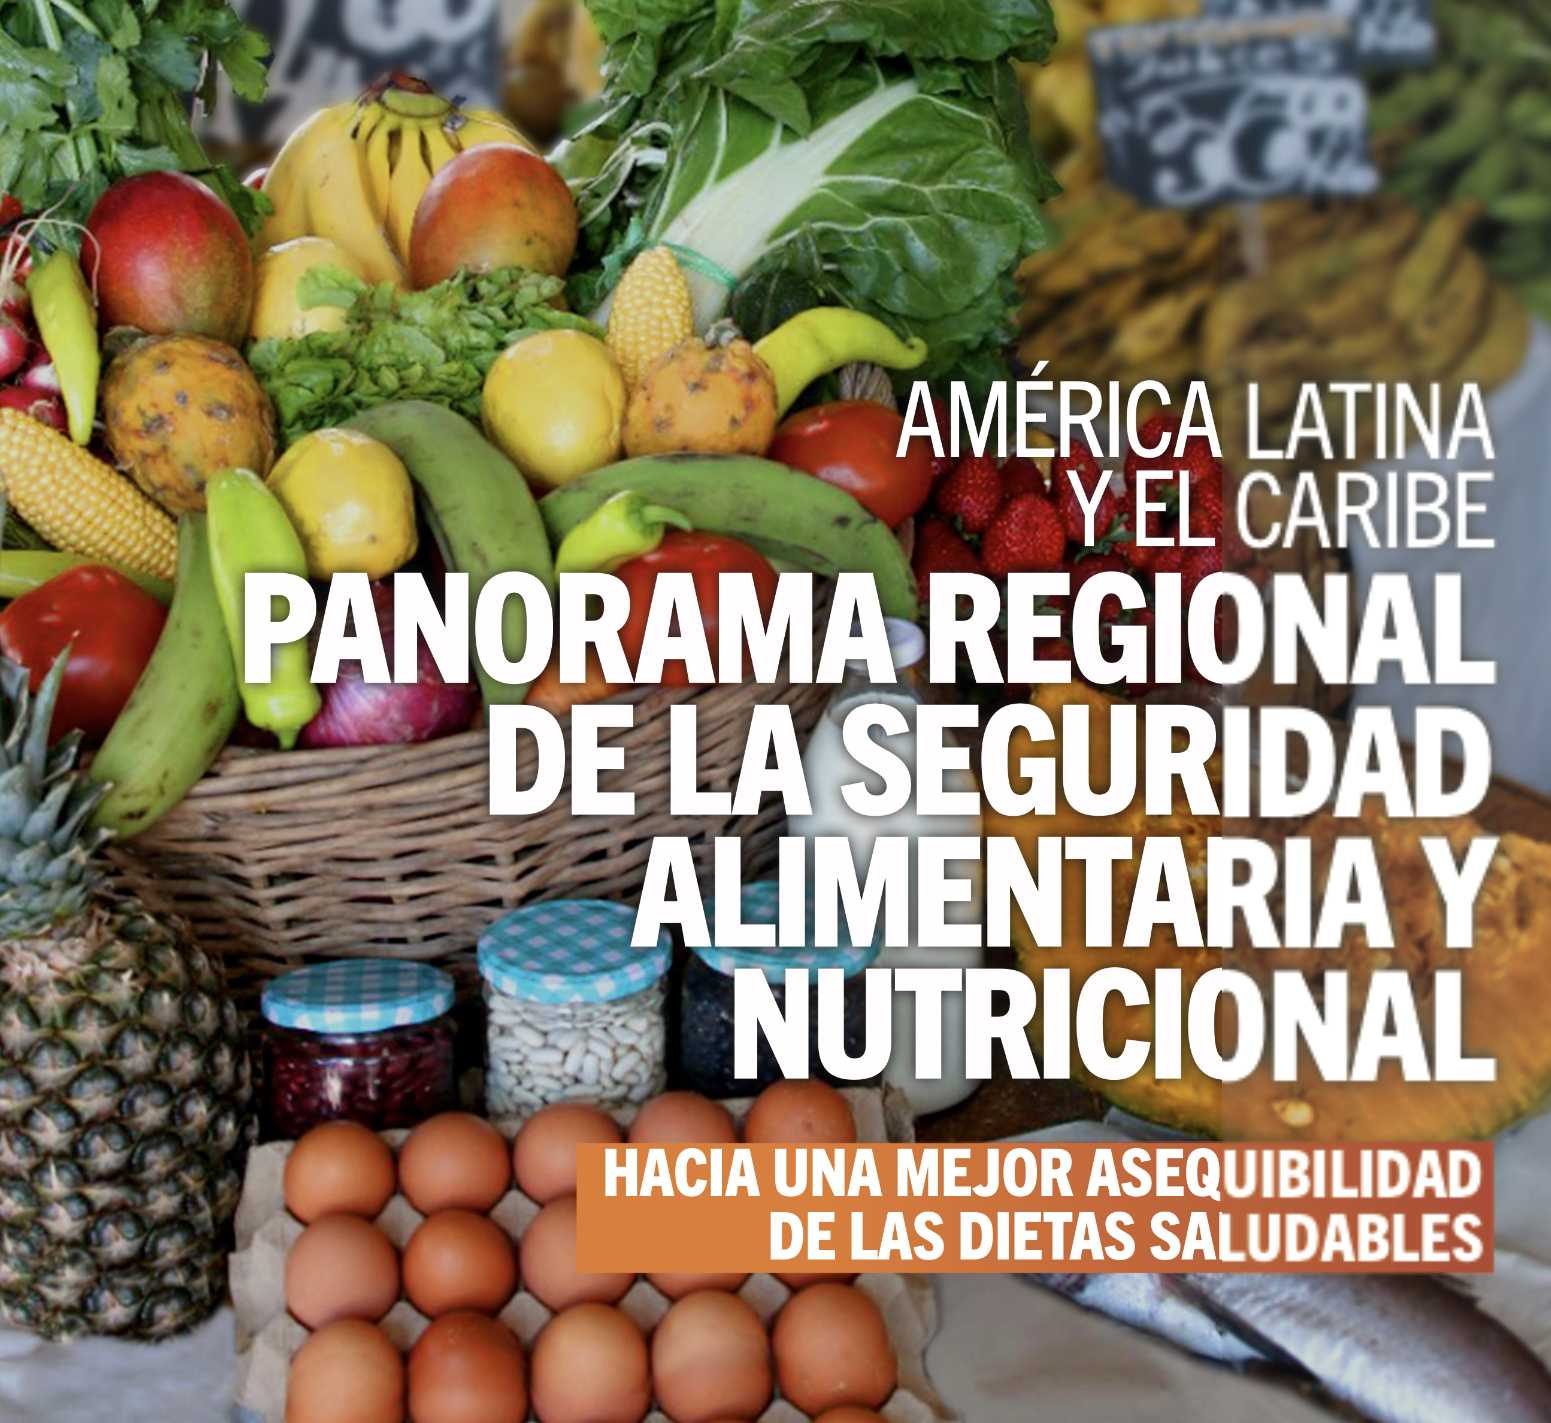 Nuevo informe de Naciones Unidas advierte que América Latina y el Caribe tiene el costo más alto para acceder a una dieta saludable en comparación con el resto del mundo.